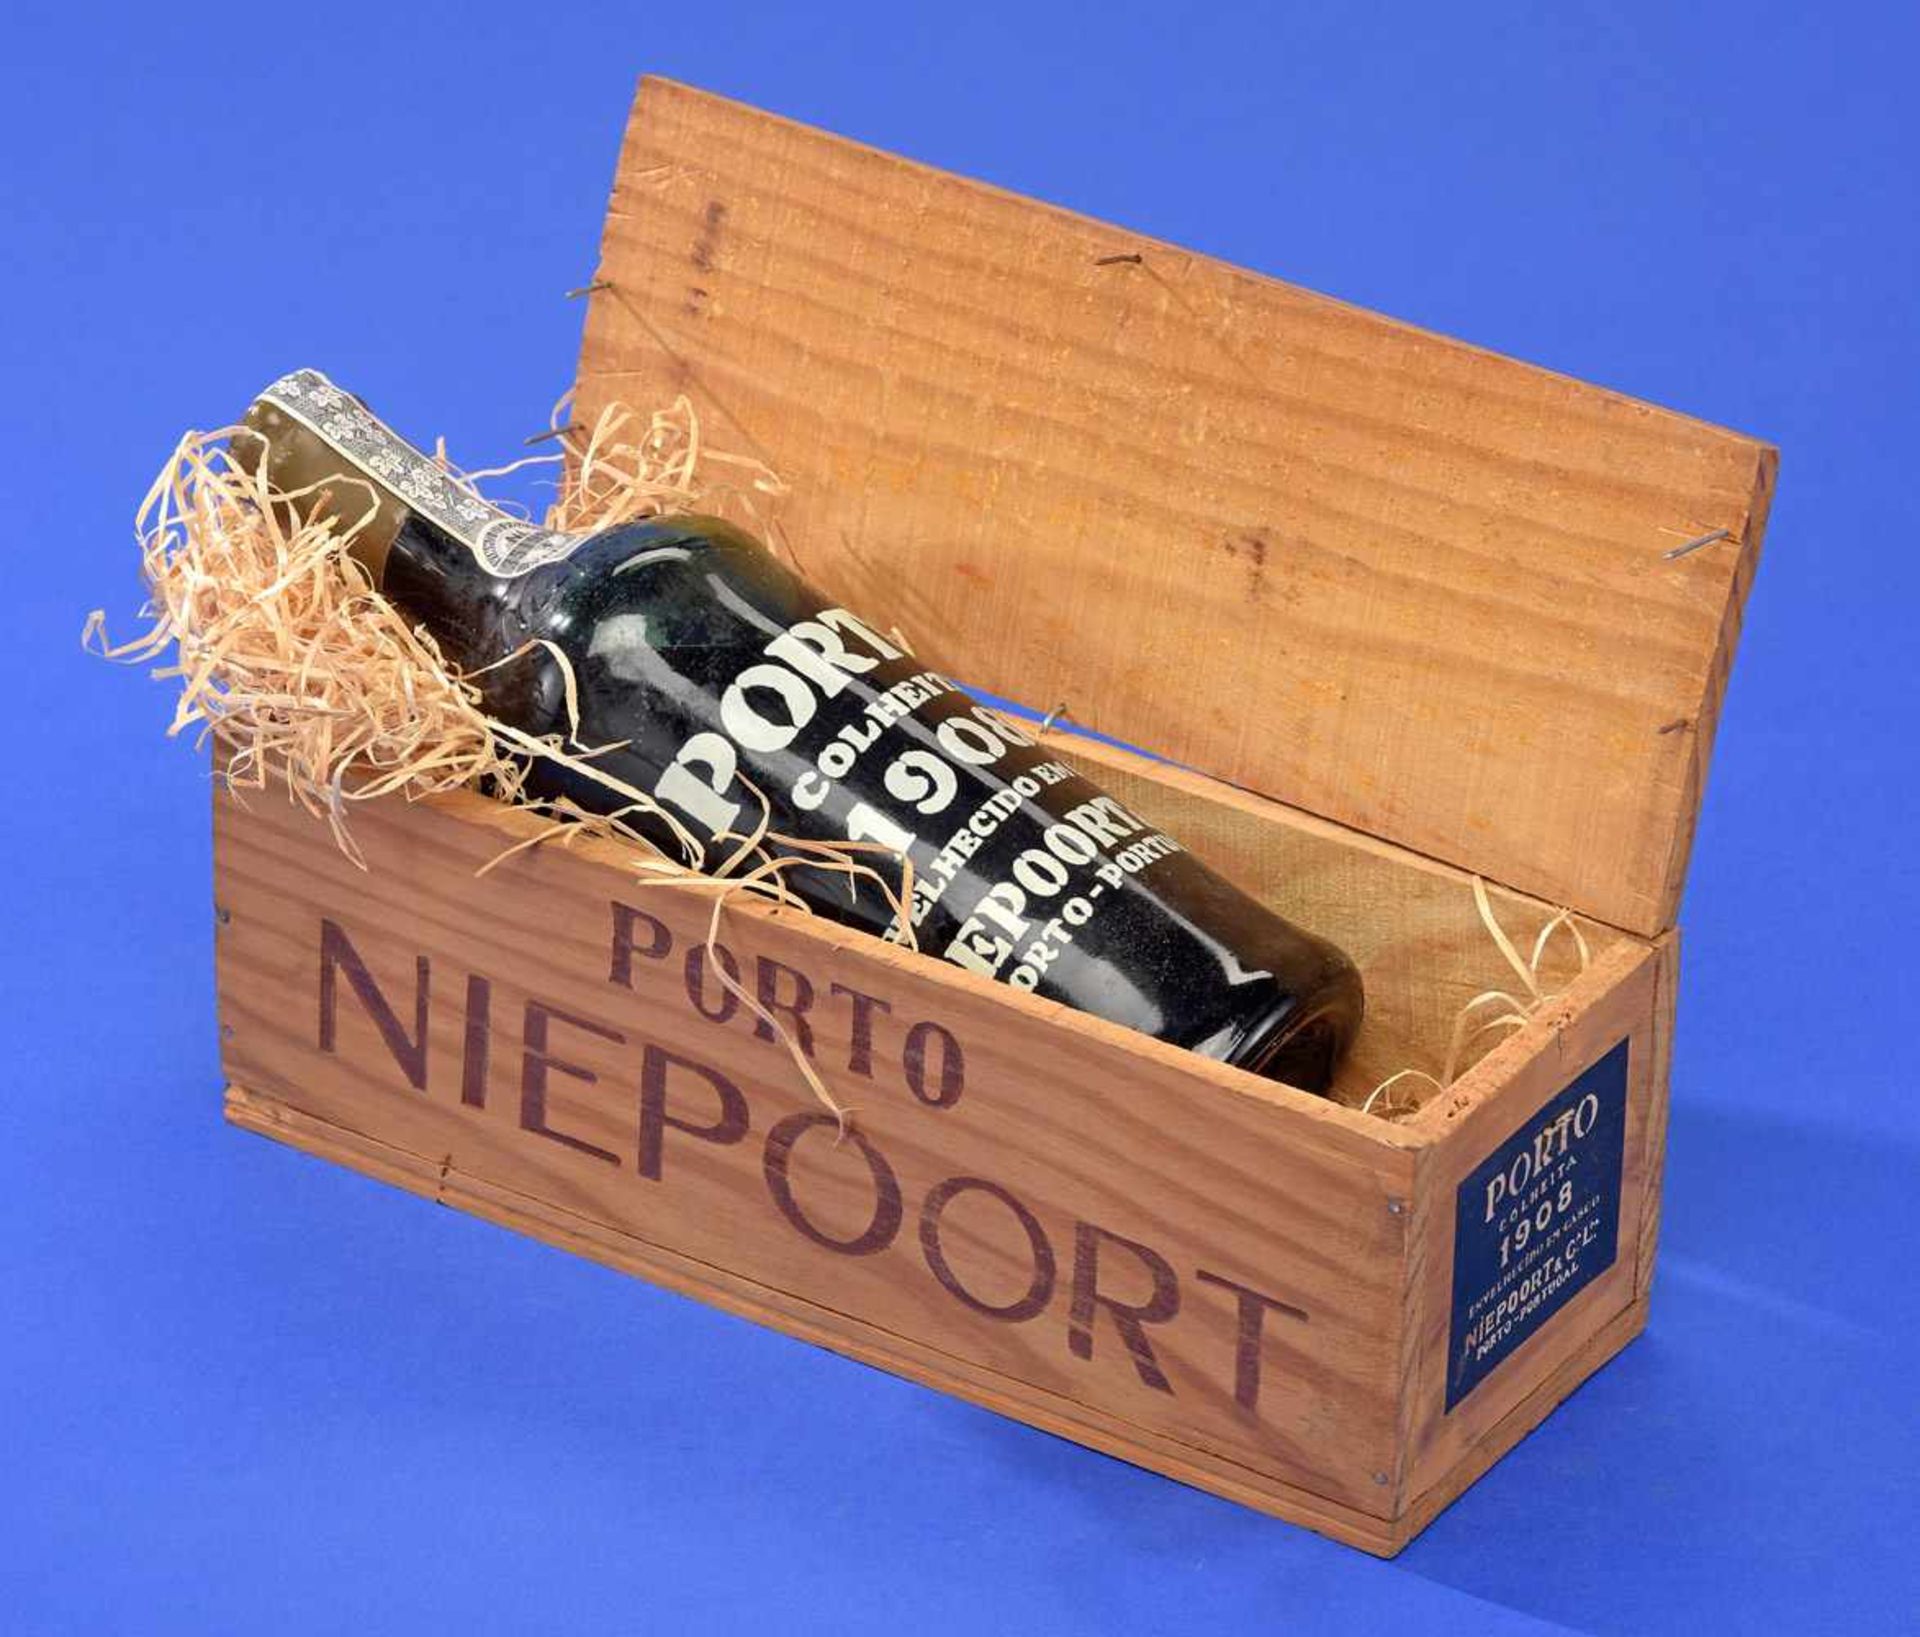 Portweinflasche 1908 Niepoort Colheita Port